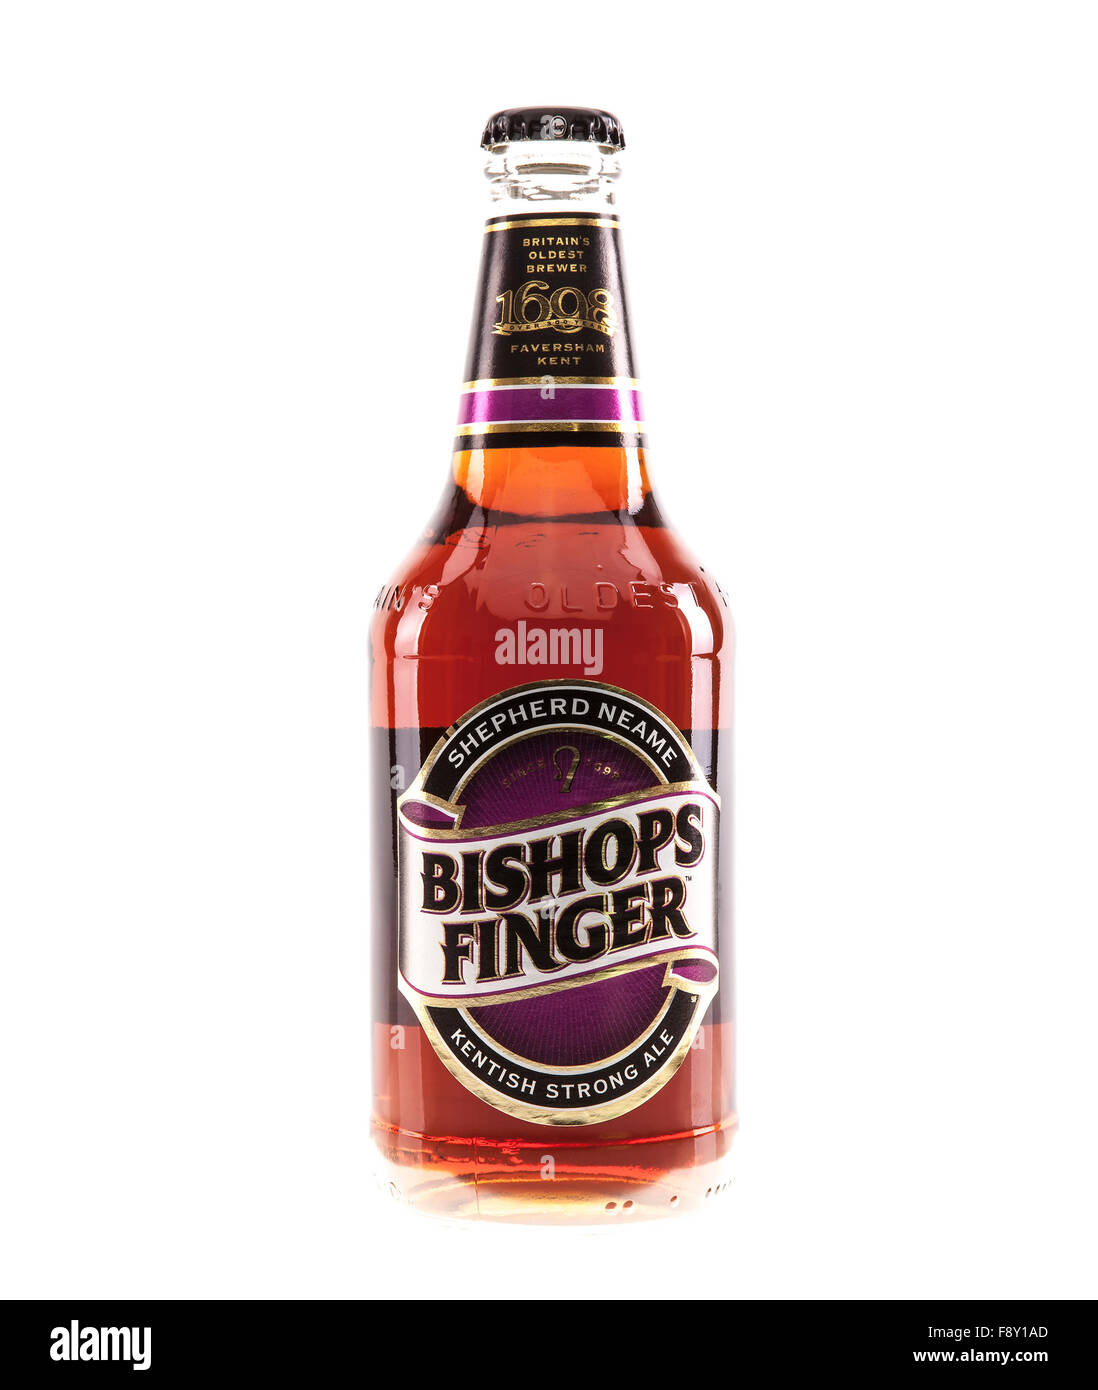 Bouteille de doigt évêques du vrai ale brassée par la plus ancienne de la Grande-Bretagne Shepherd Neame Brewer 1698 Banque D'Images